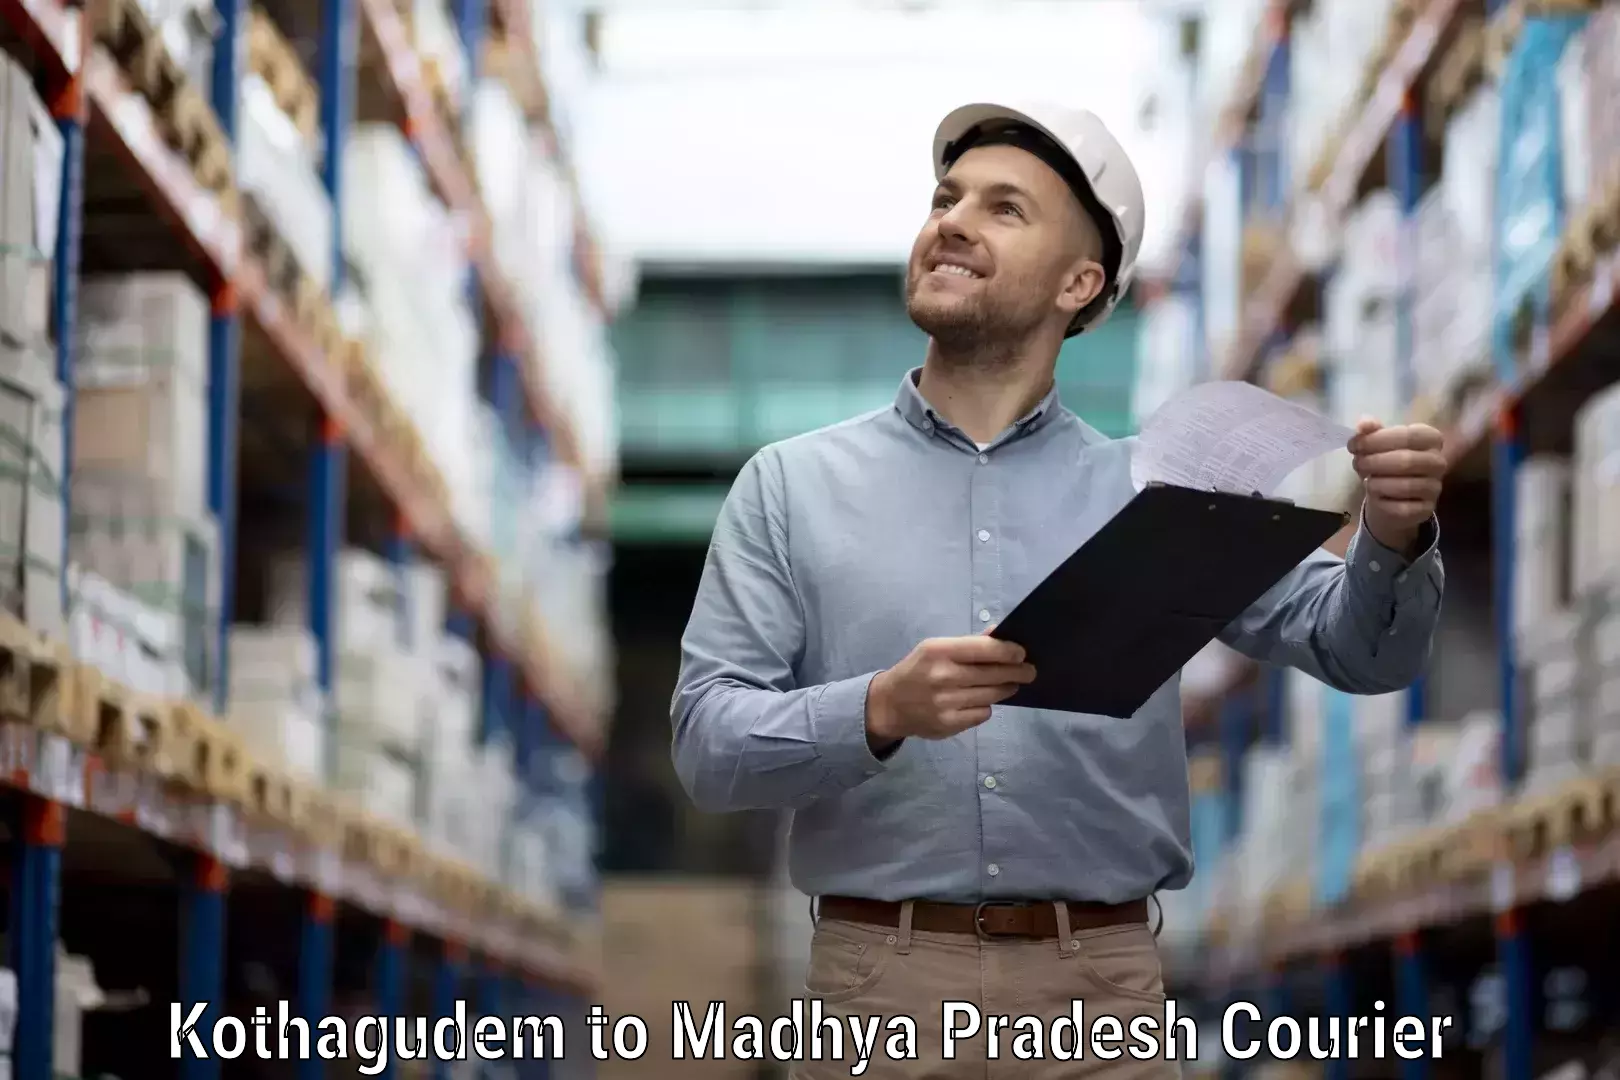 Courier service comparison Kothagudem to Ranchha